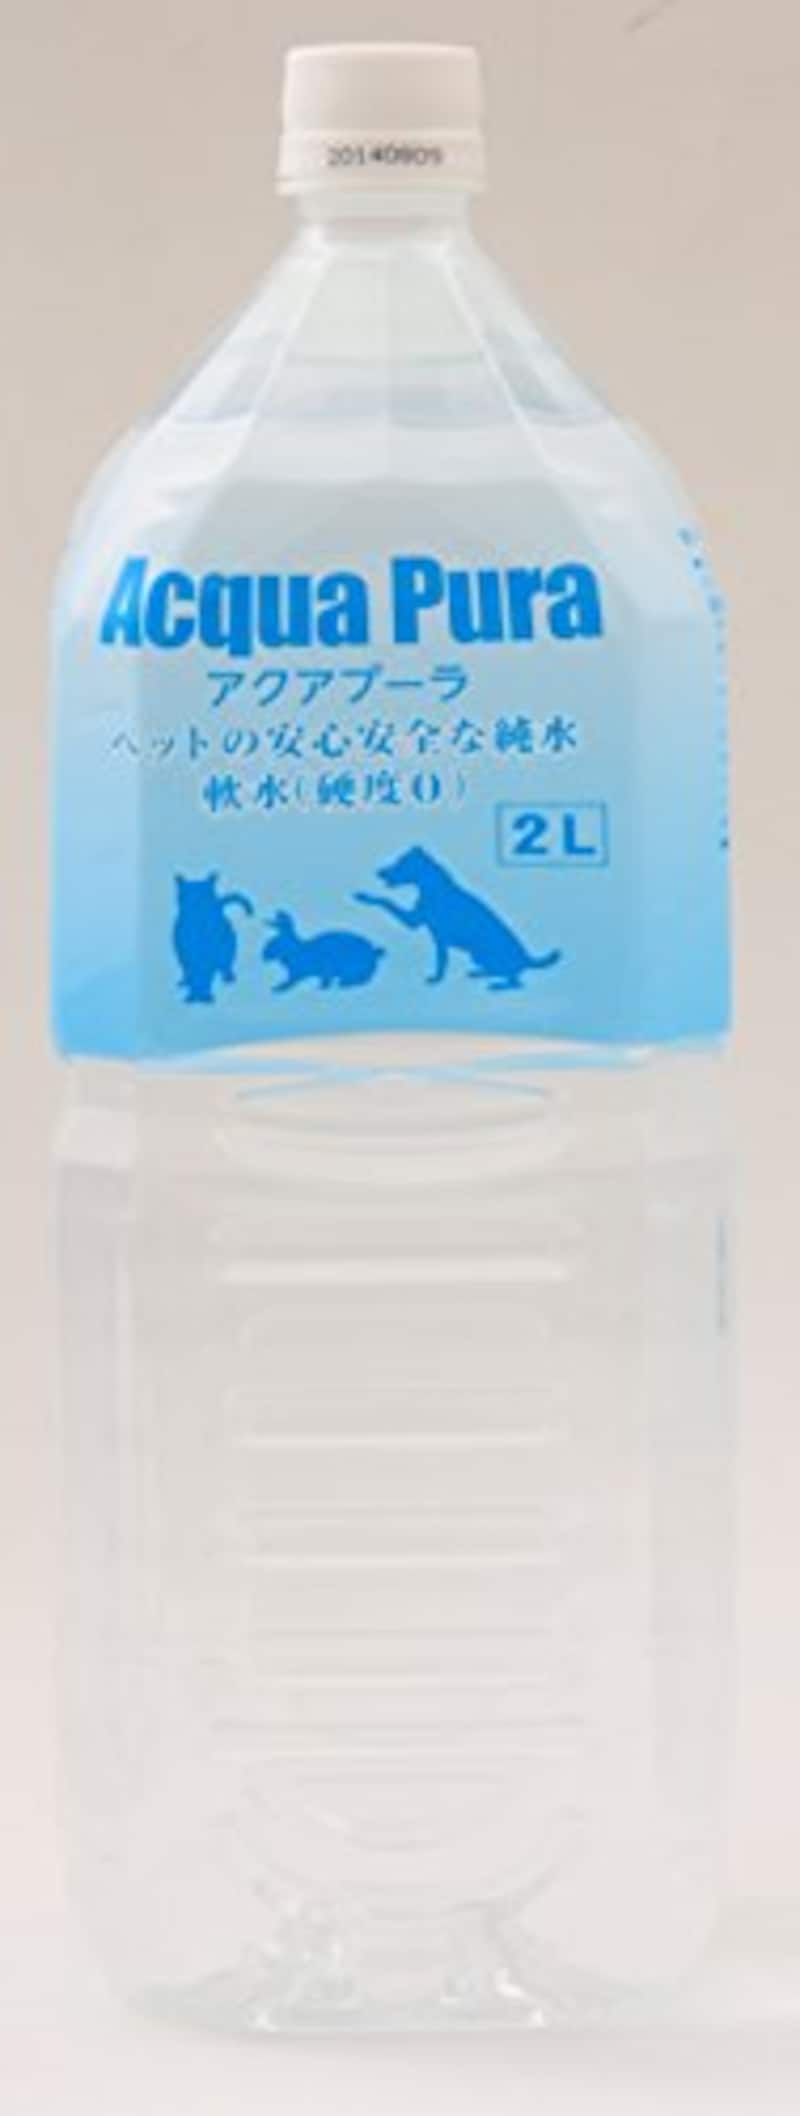 アクアプーラ,【獣医師推薦】ペットの安心安全な純水 